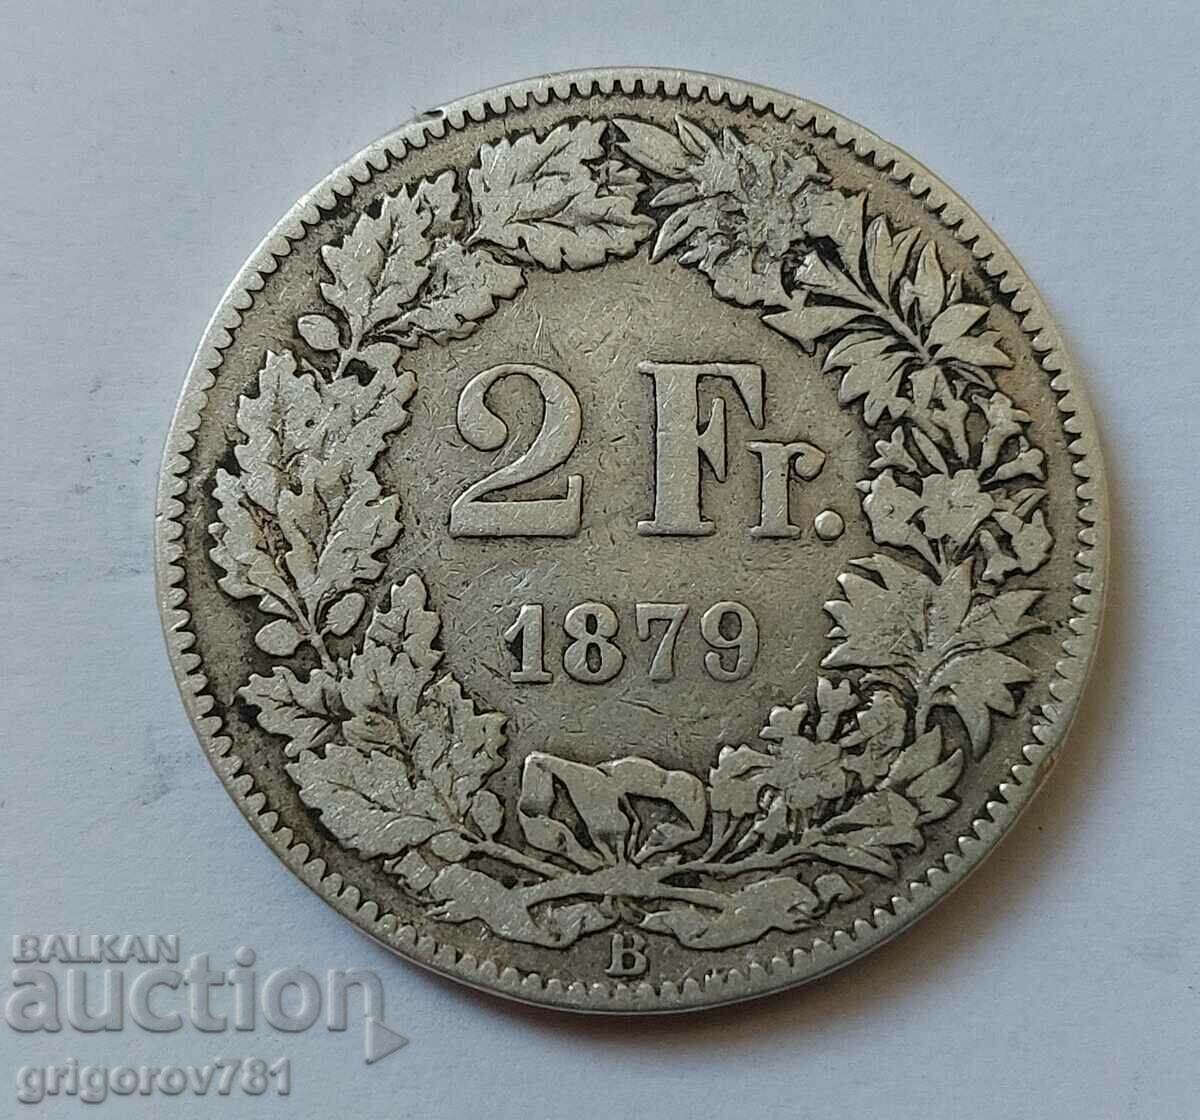 Ασημένιο 2 φράγκα Ελβετία 1879 Β - ασημένιο νόμισμα